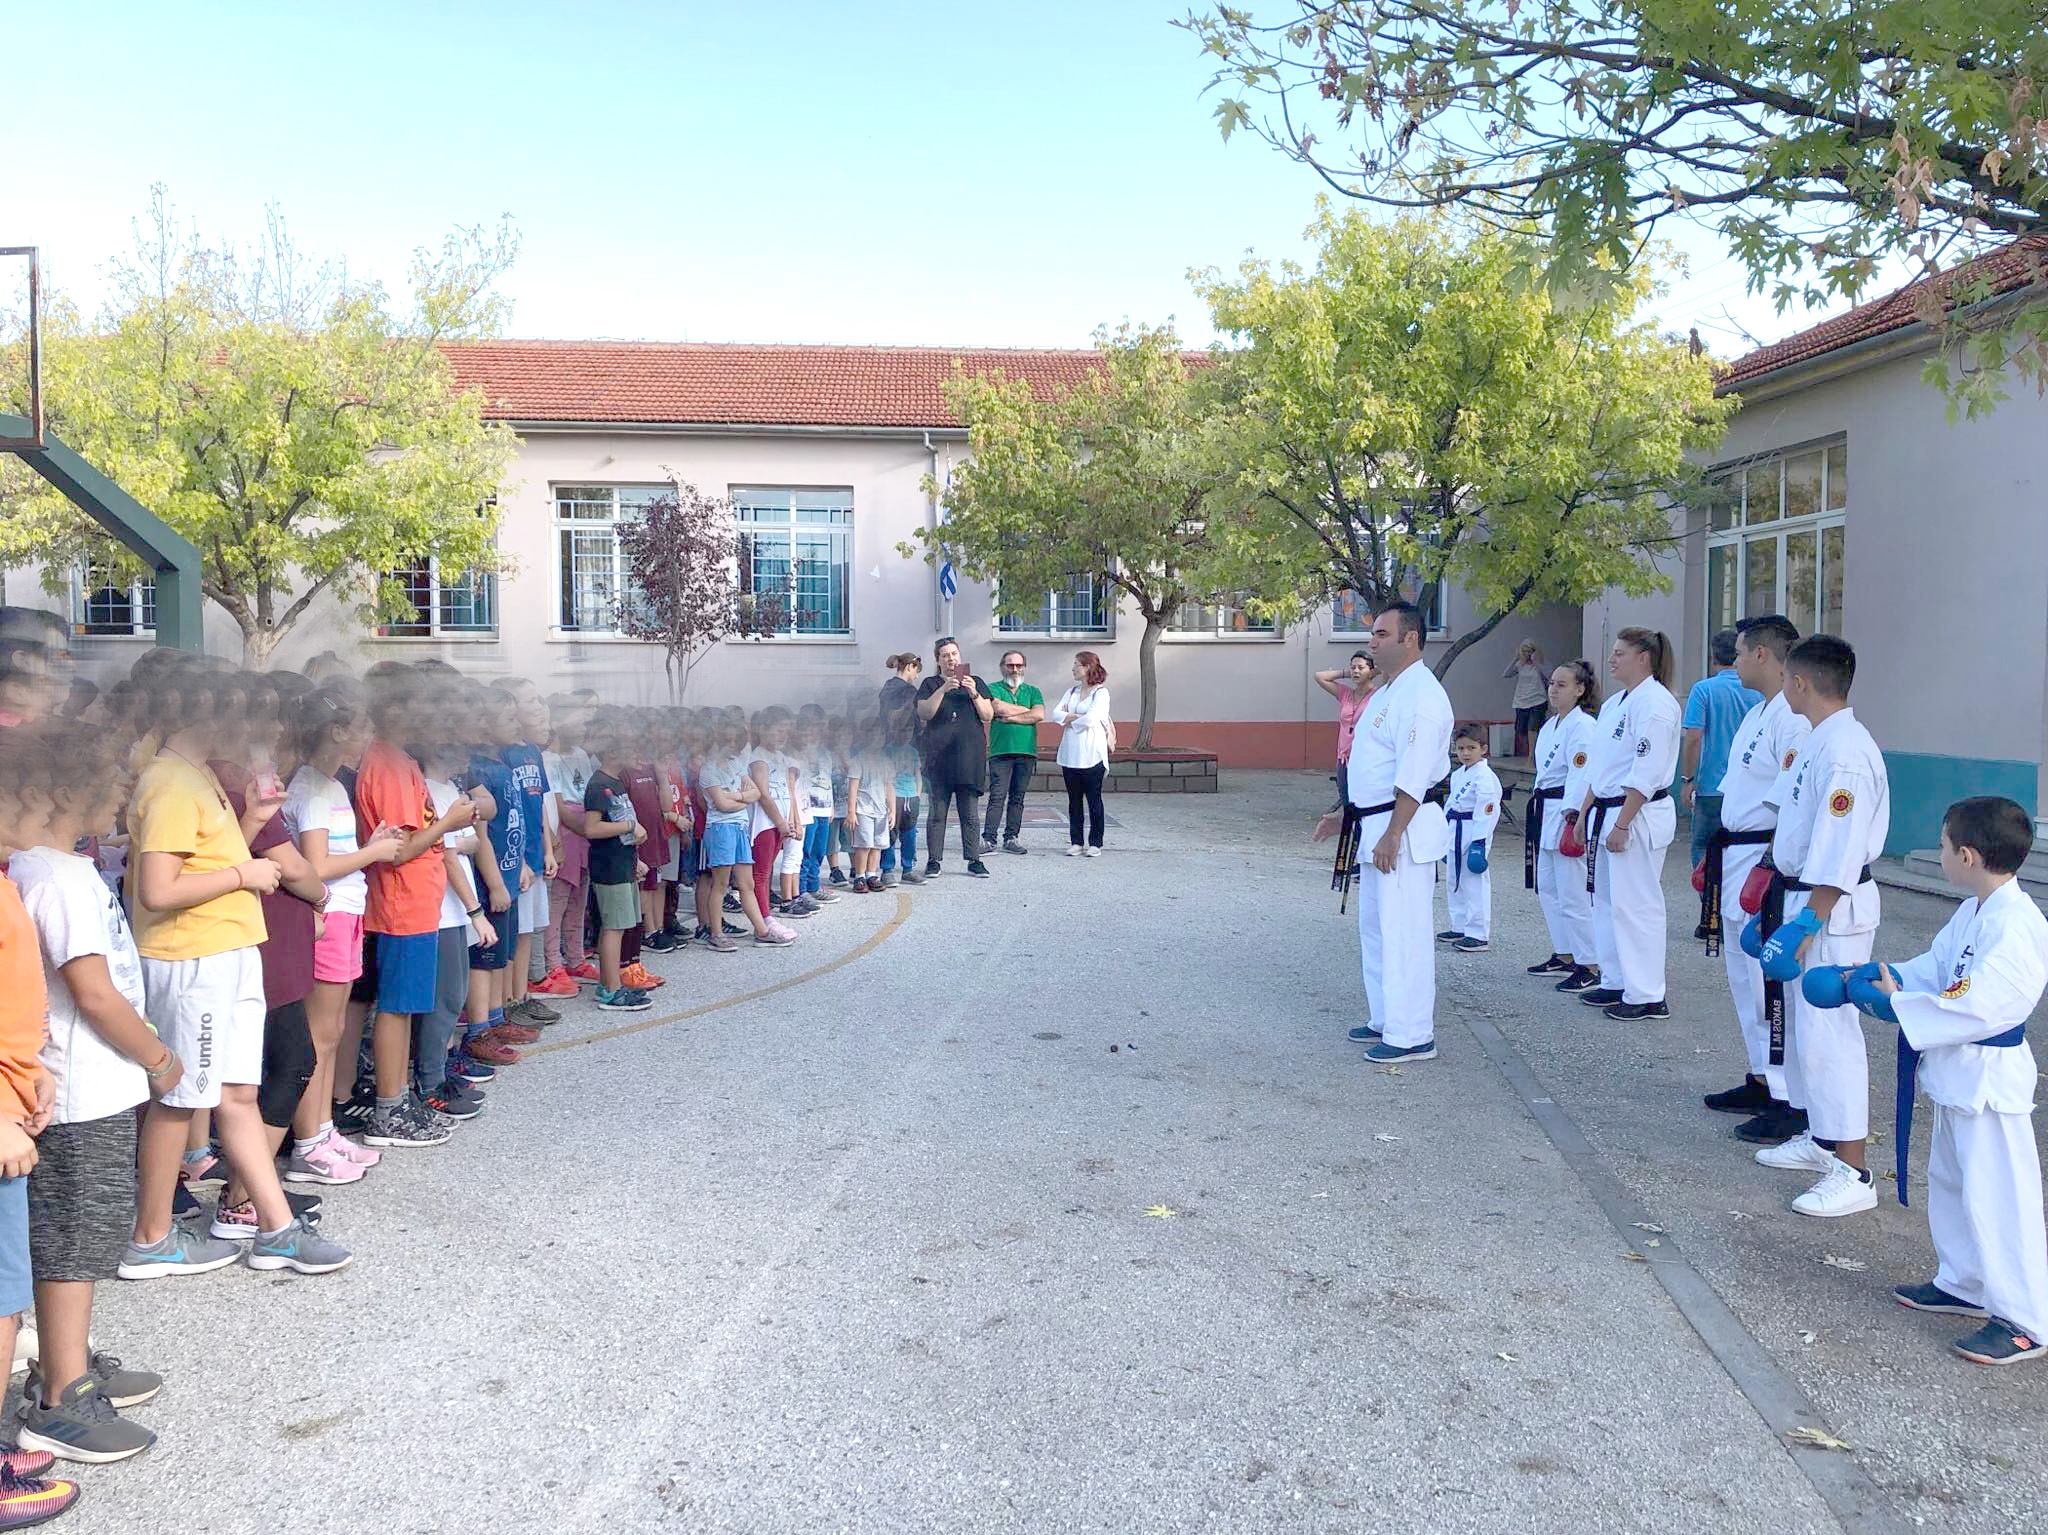 Ο Α.Σ. πολεμικών τεχνών Αλμυρού Μαγνησίας στην 6η Πανελλήνια Ημέρα Σχολικού Αθλητισμού